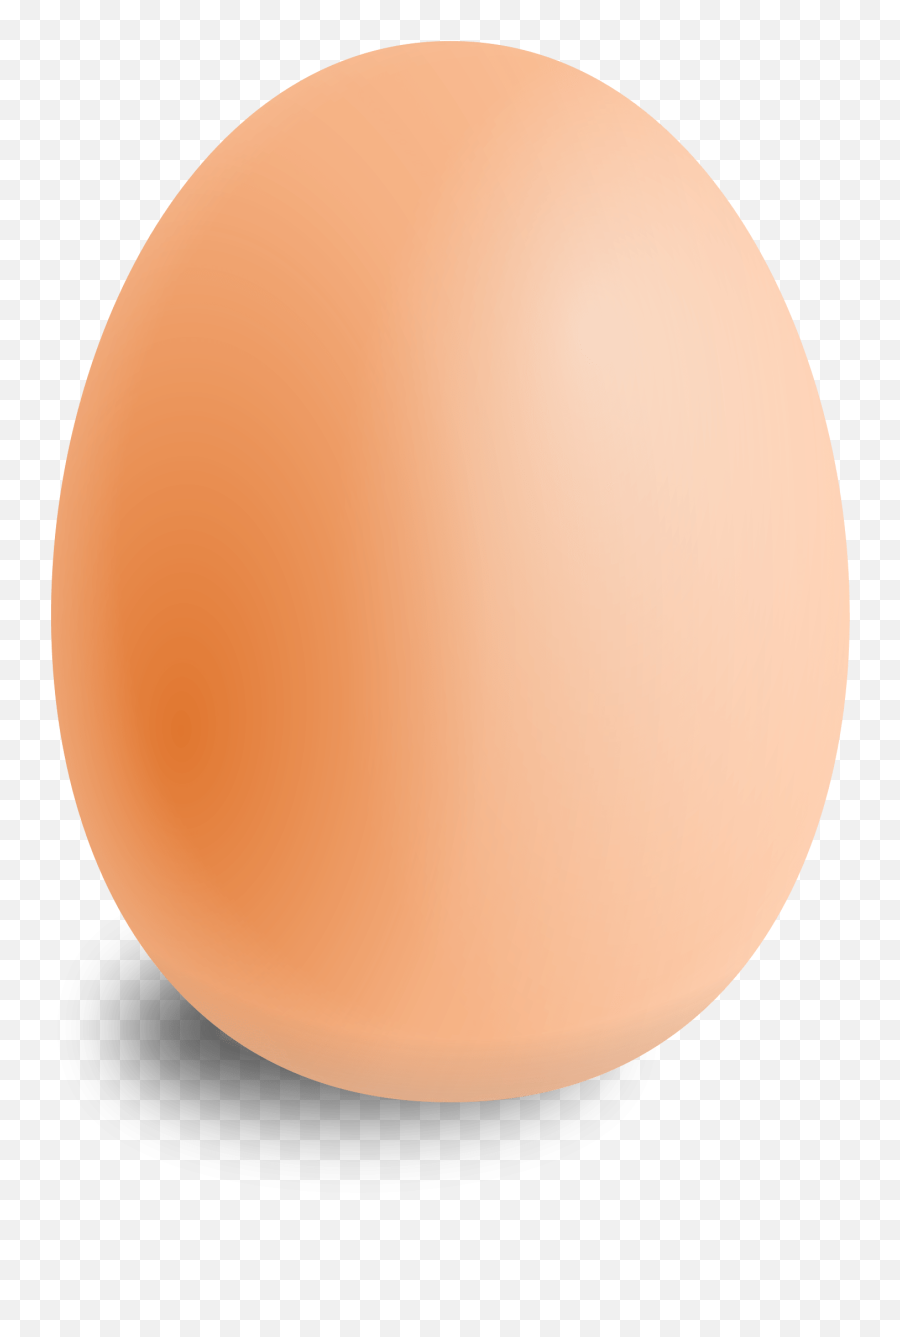 Eggs Png Transparent Image - Egg Png,Eggs Transparent Background